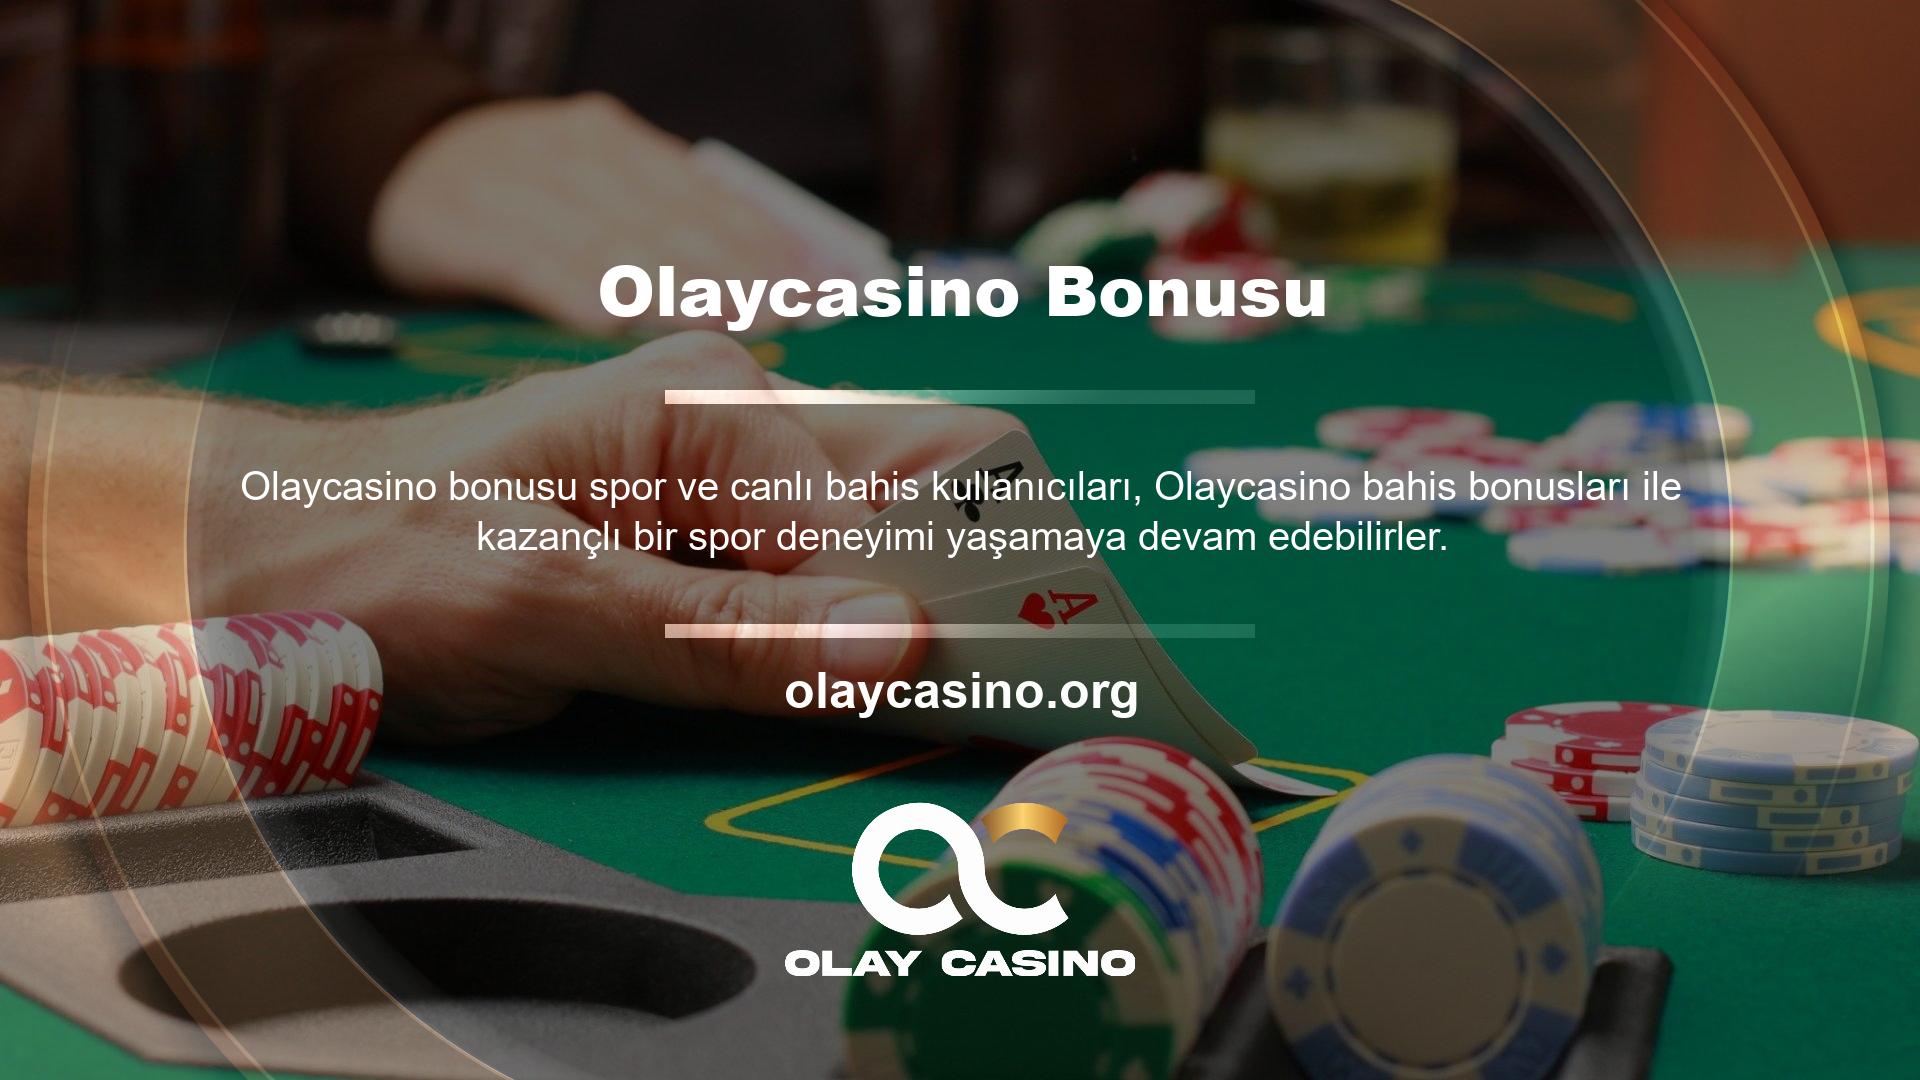 Olaycasino sitesi, casino bölümünde üyelerine çeşitli bonus ve promosyonlar sunarken, spor ve canlı bahis bölümlerinde de birçok promosyon sunmaktadır